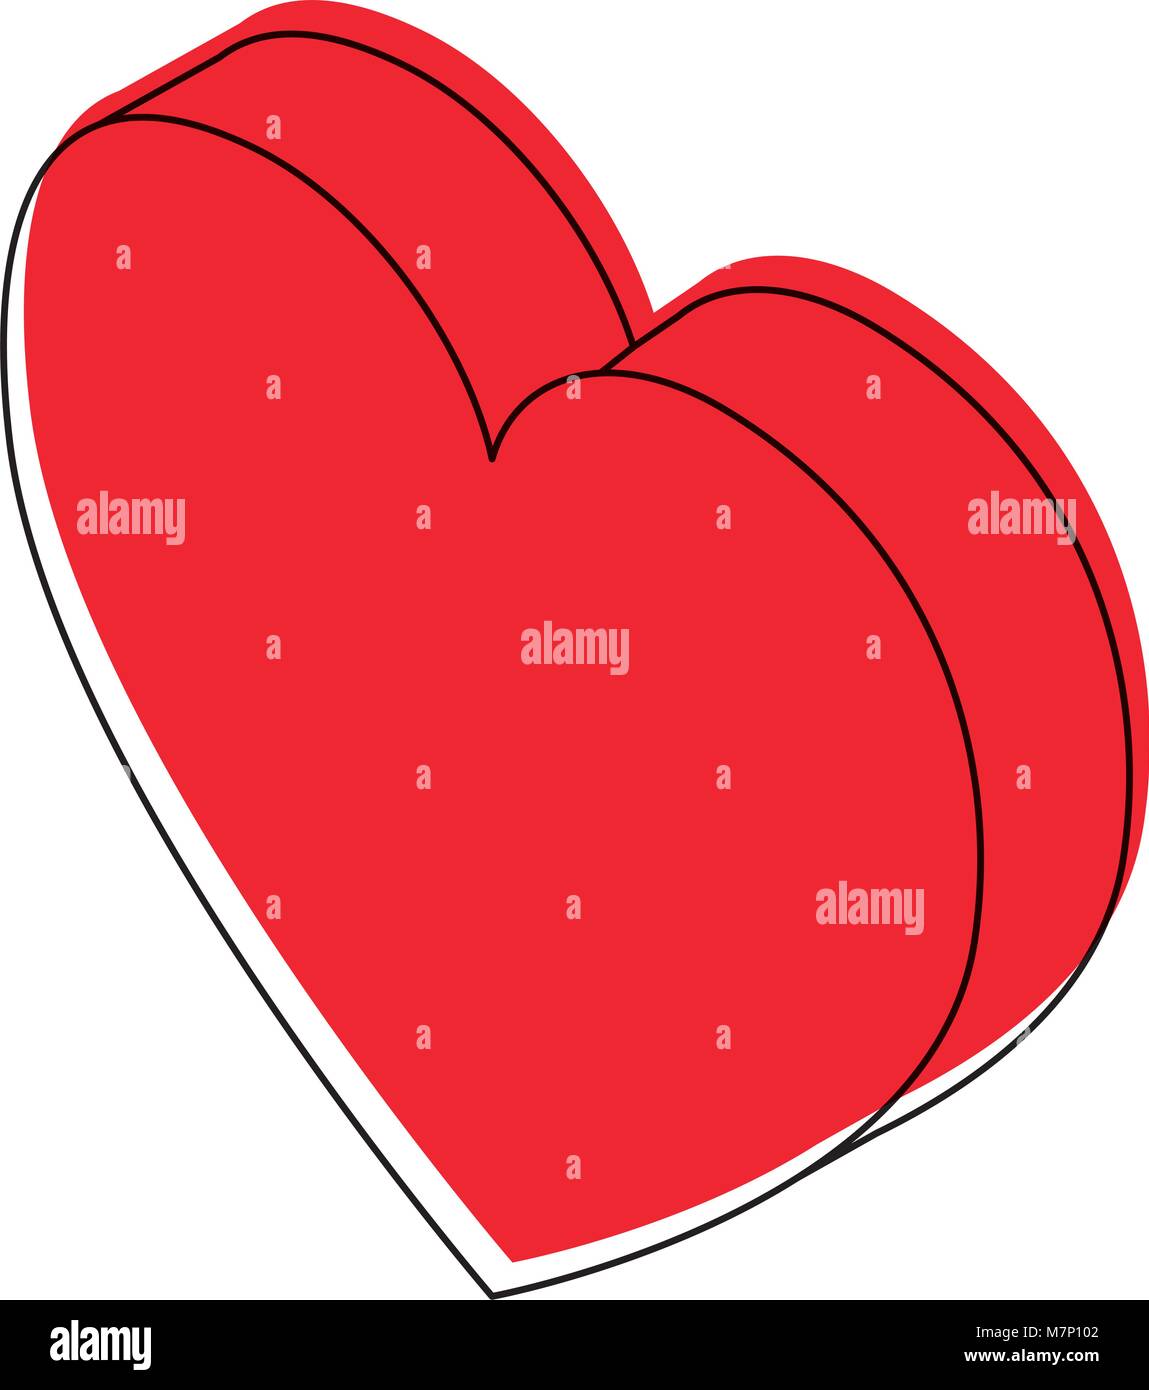 heart love isometric icon Stock Vector